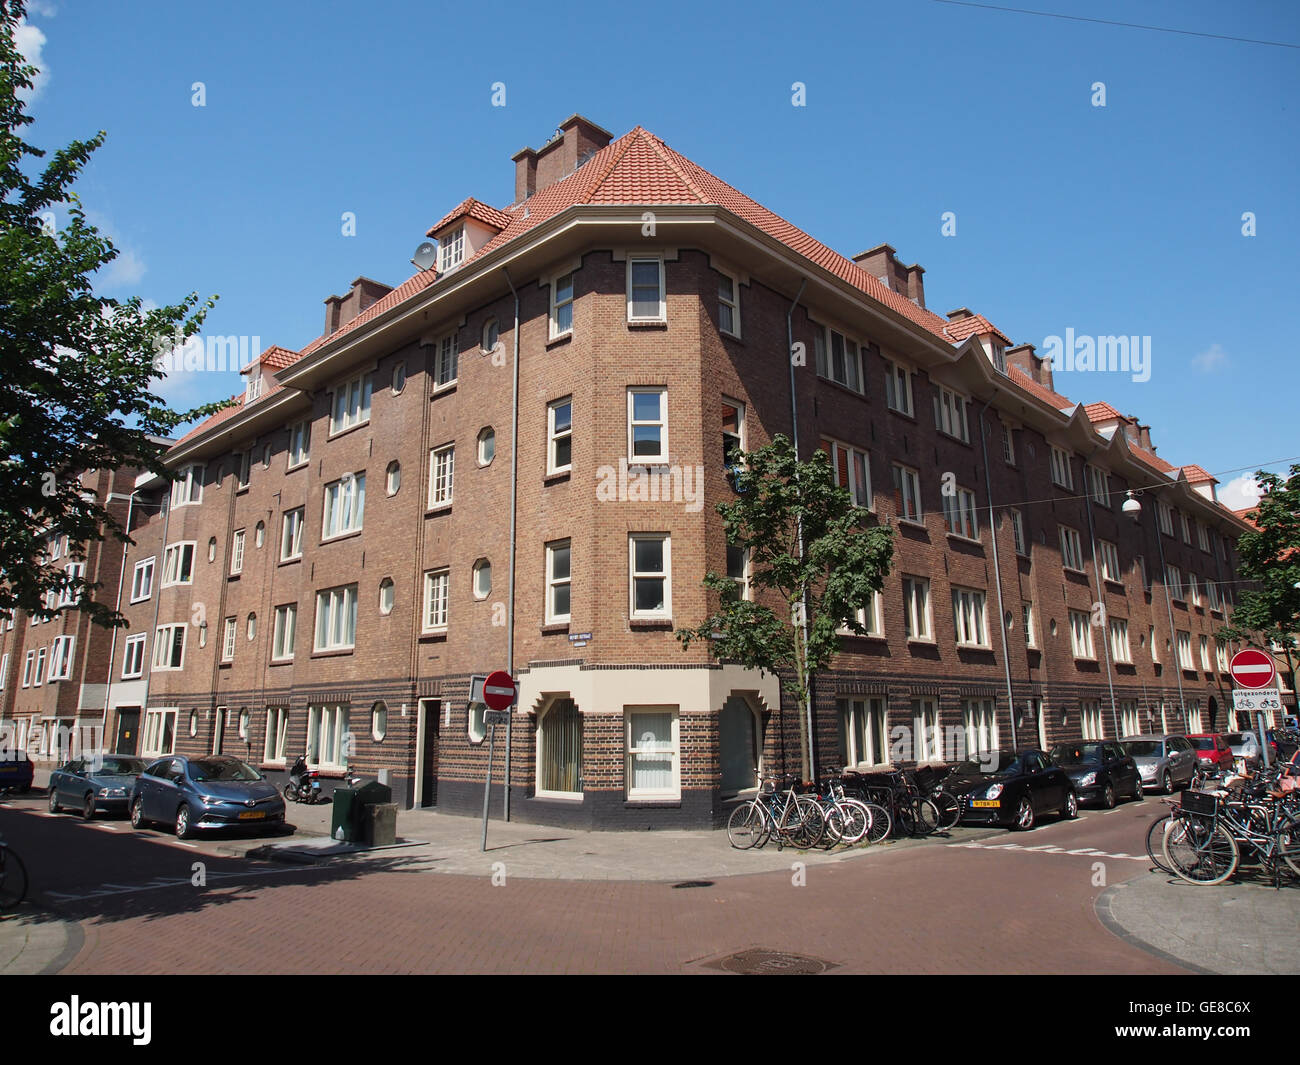 Hembrugstraat 44 en hoger, hoek Houtrijkstraat pic1 Stock Photo